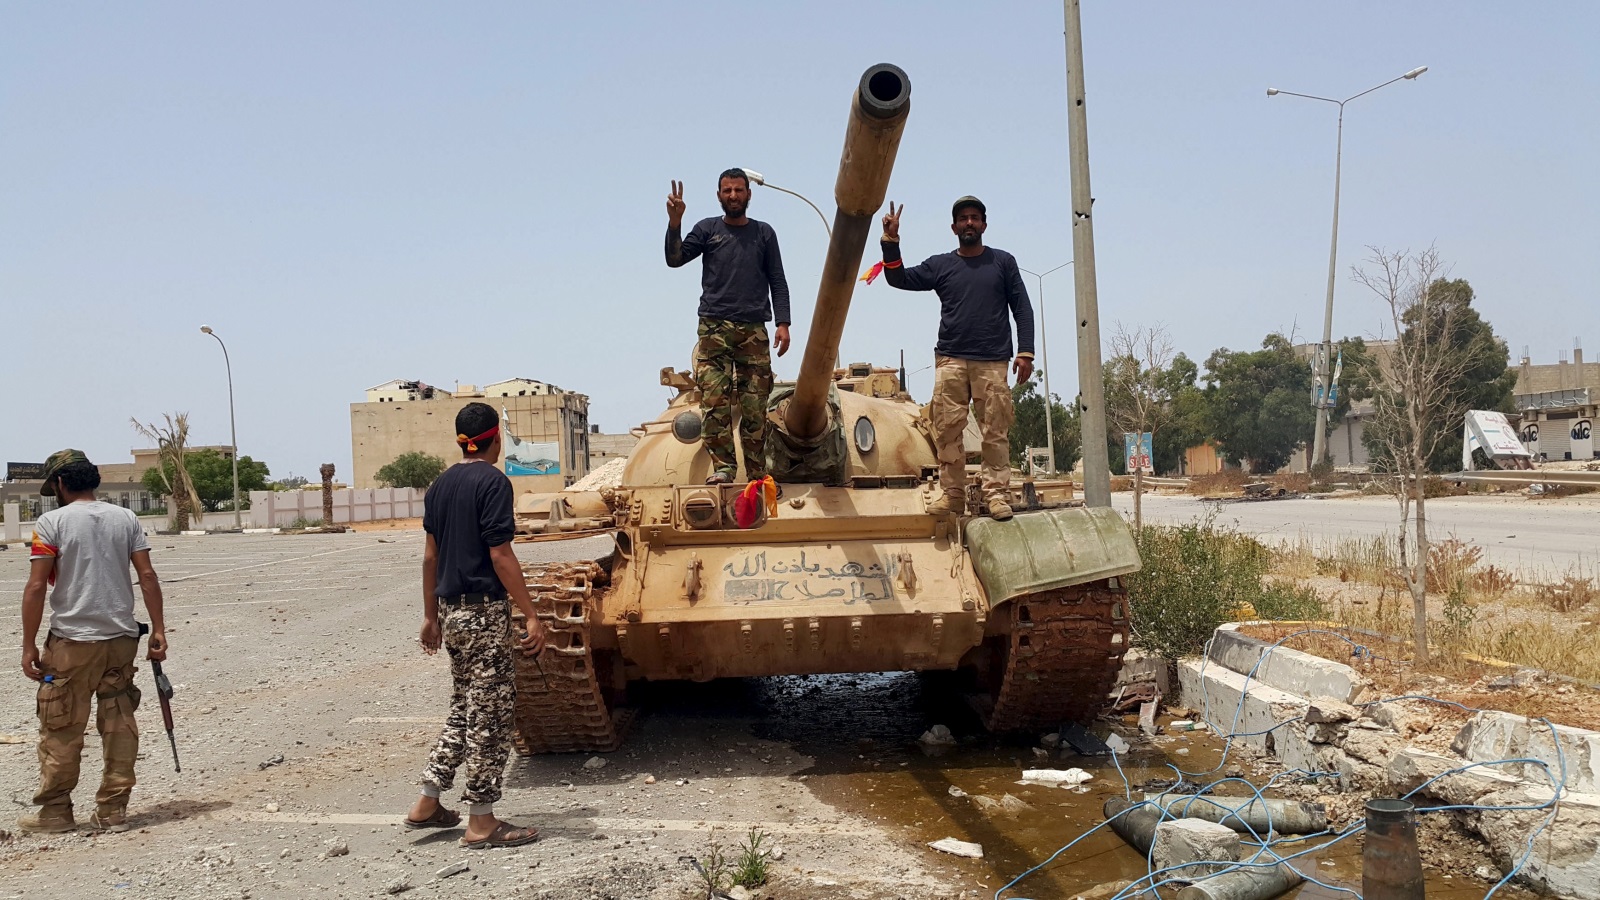 وجود تنظيم الدولة في ليبيا مُقلق جدا وقد يُشكّل خطرا على أمن تونس وديمقراطيتها